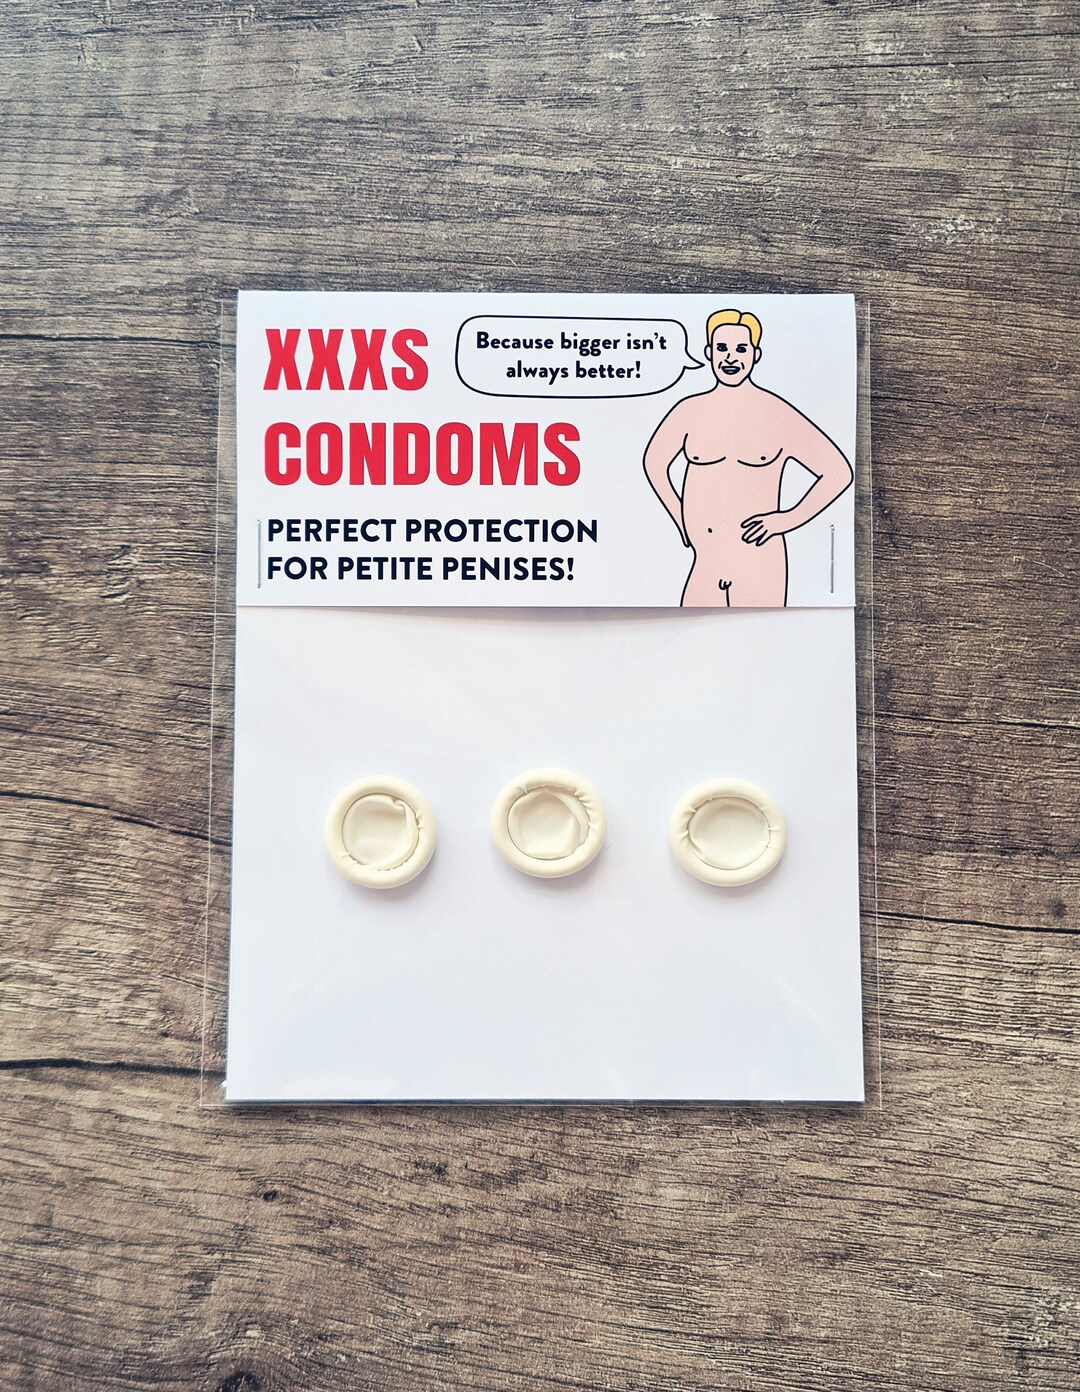 Micropenis condom